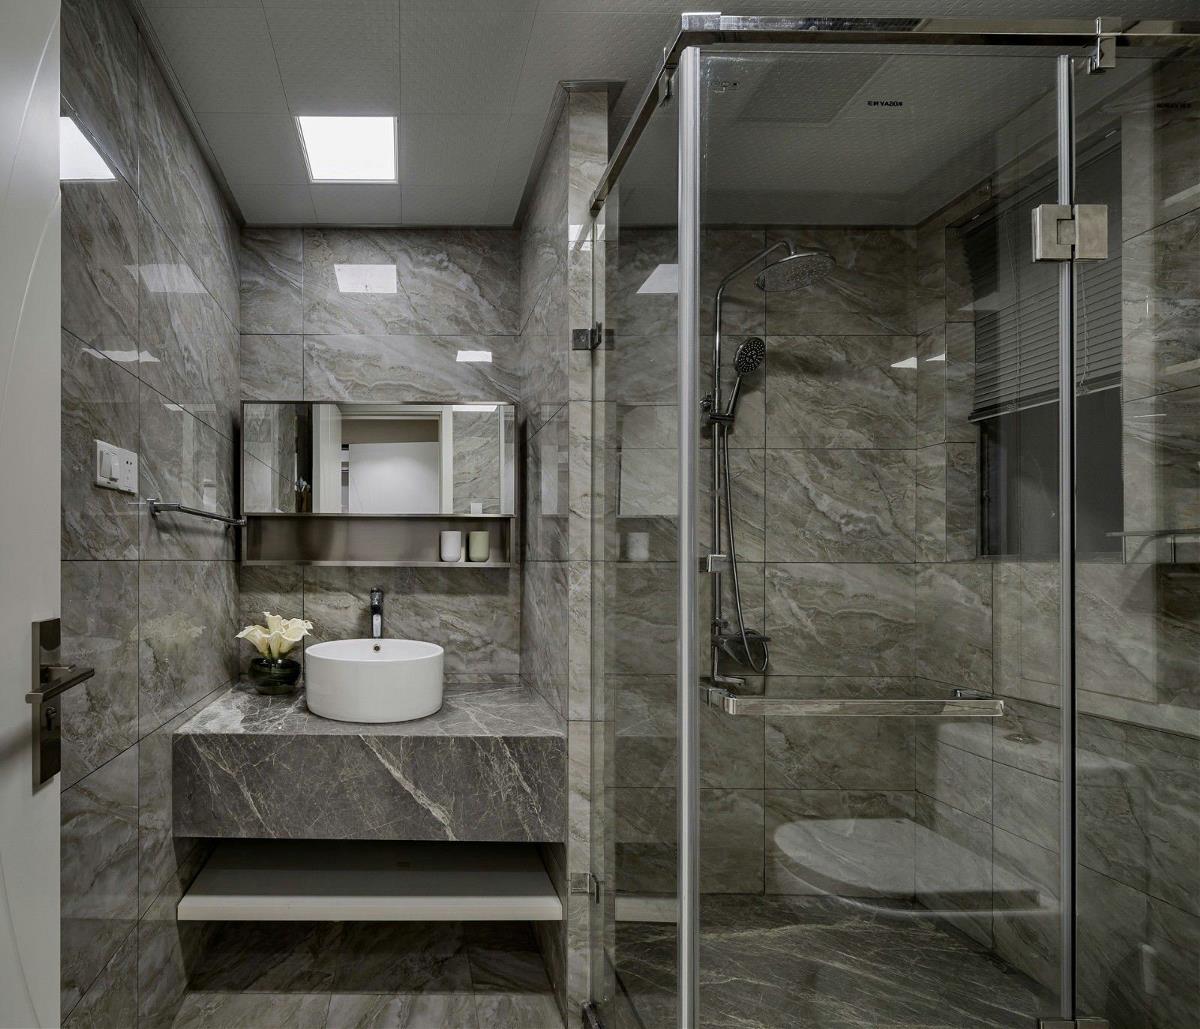 大理石的材质设计让卫生间显得十分简约，白色洁具的点缀彰显了空间的时尚特点。